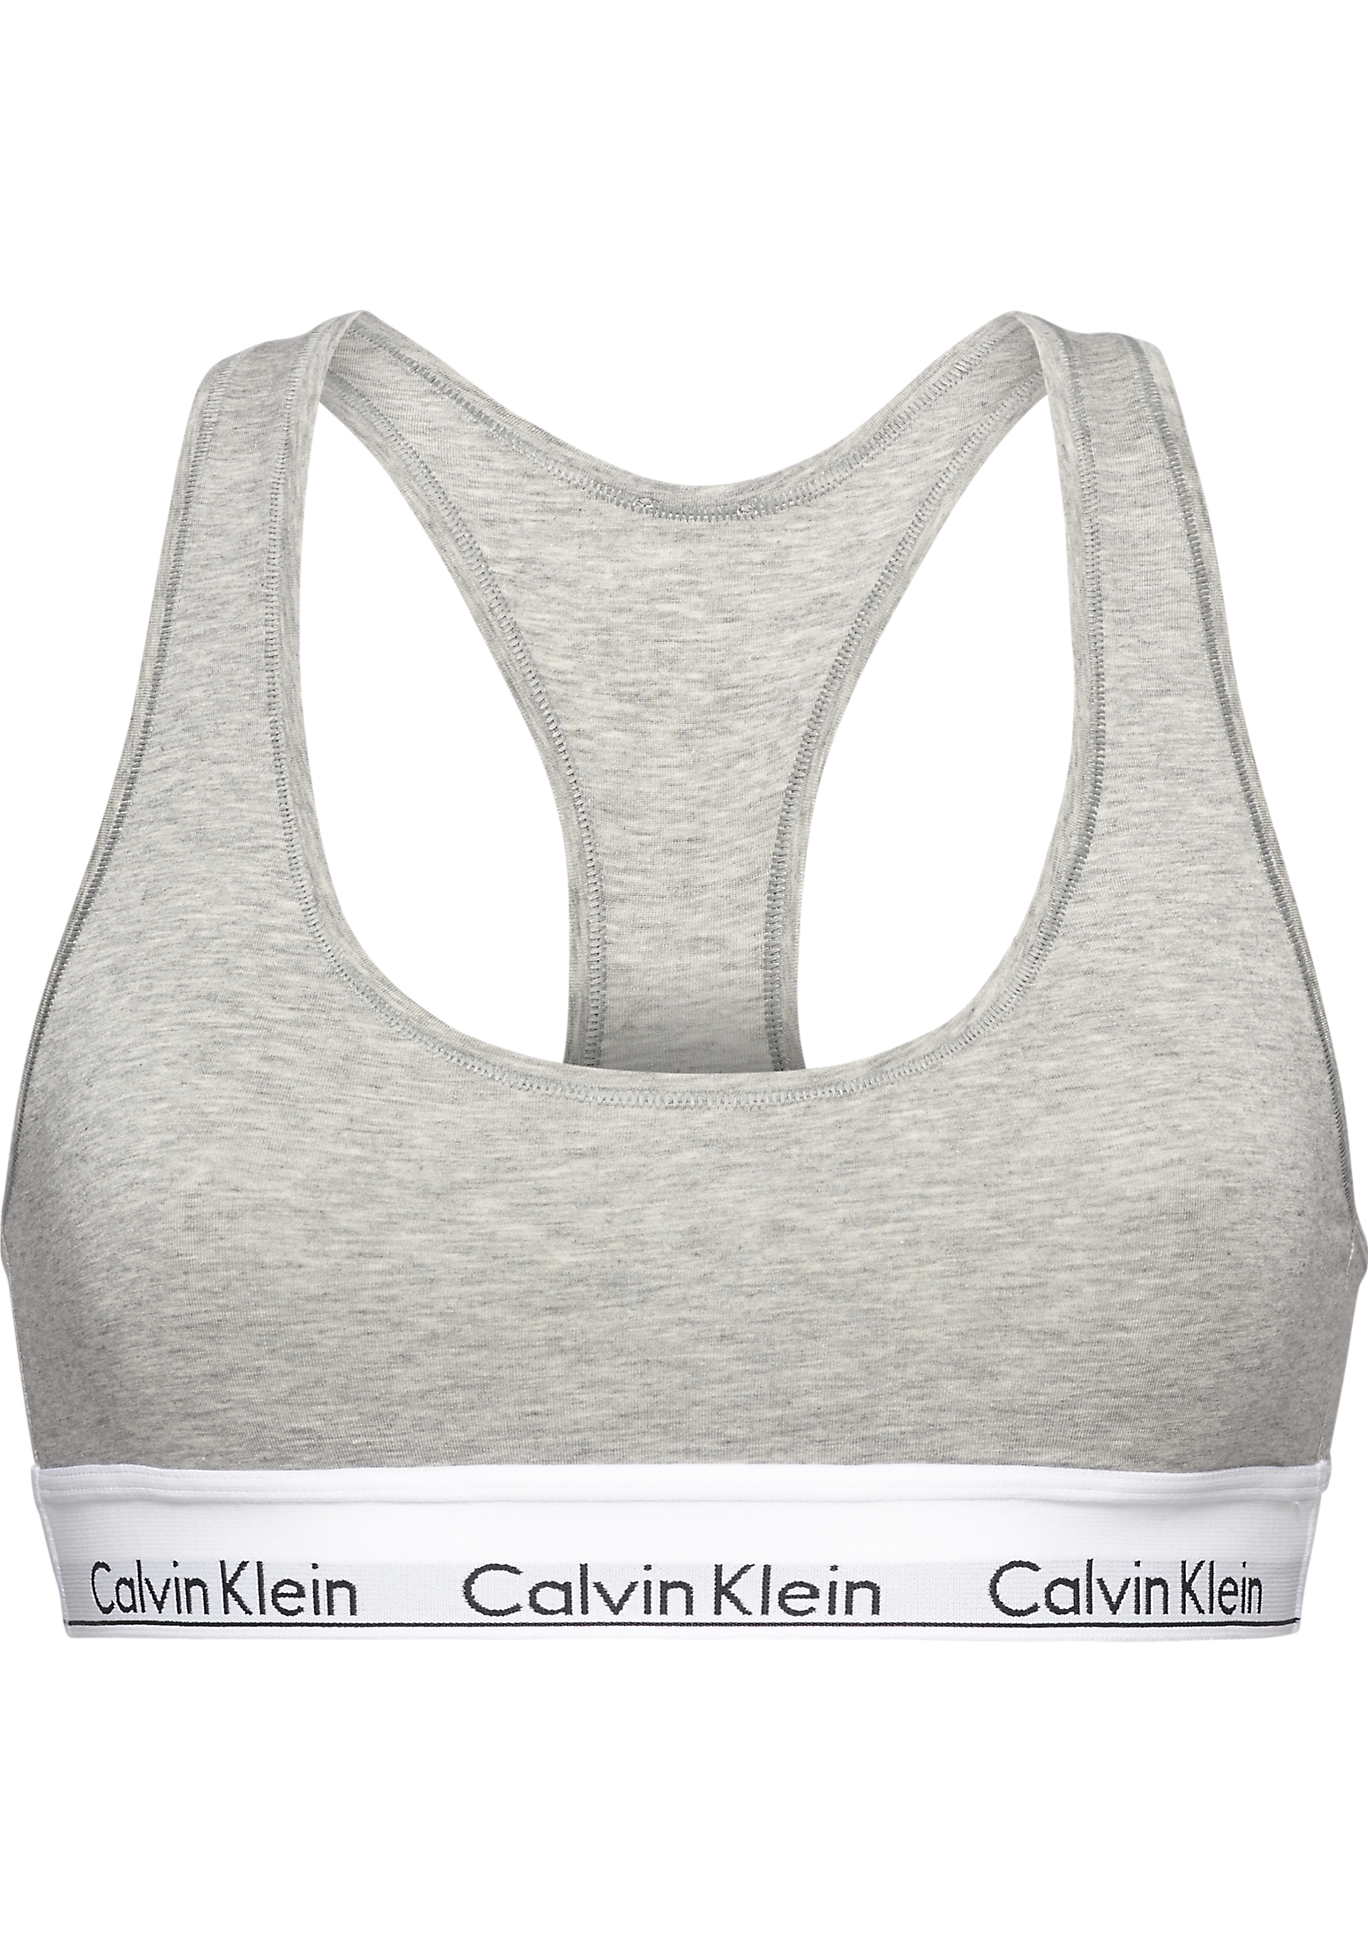 uitvegen mengsel Neuropathie Calvin Klein dames Modern Cotton bralette top, ongevoerd, grijs - Shop de  nieuwste voorjaarsmode